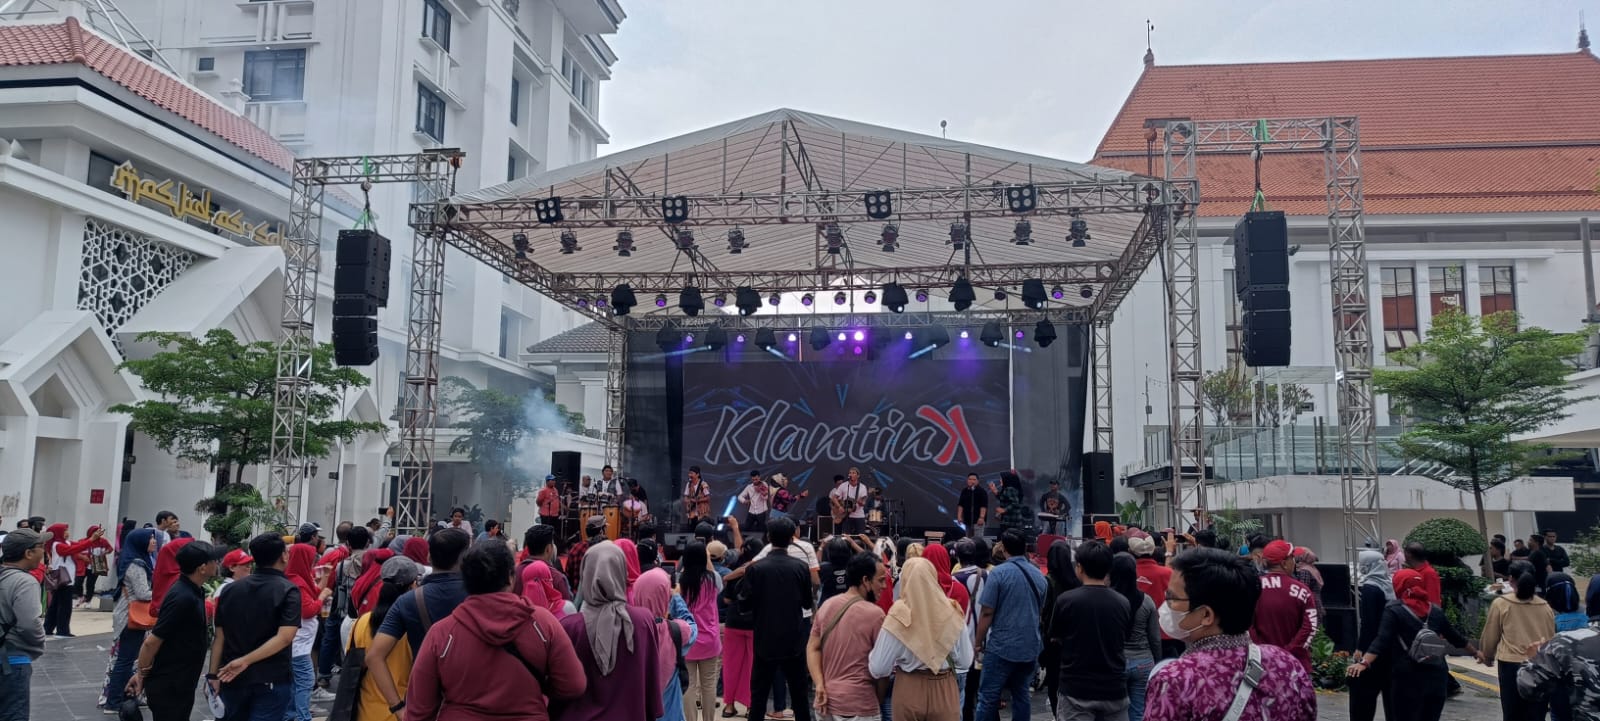 Klantink Ramaikan Pesta Wira Usaha Surabaya